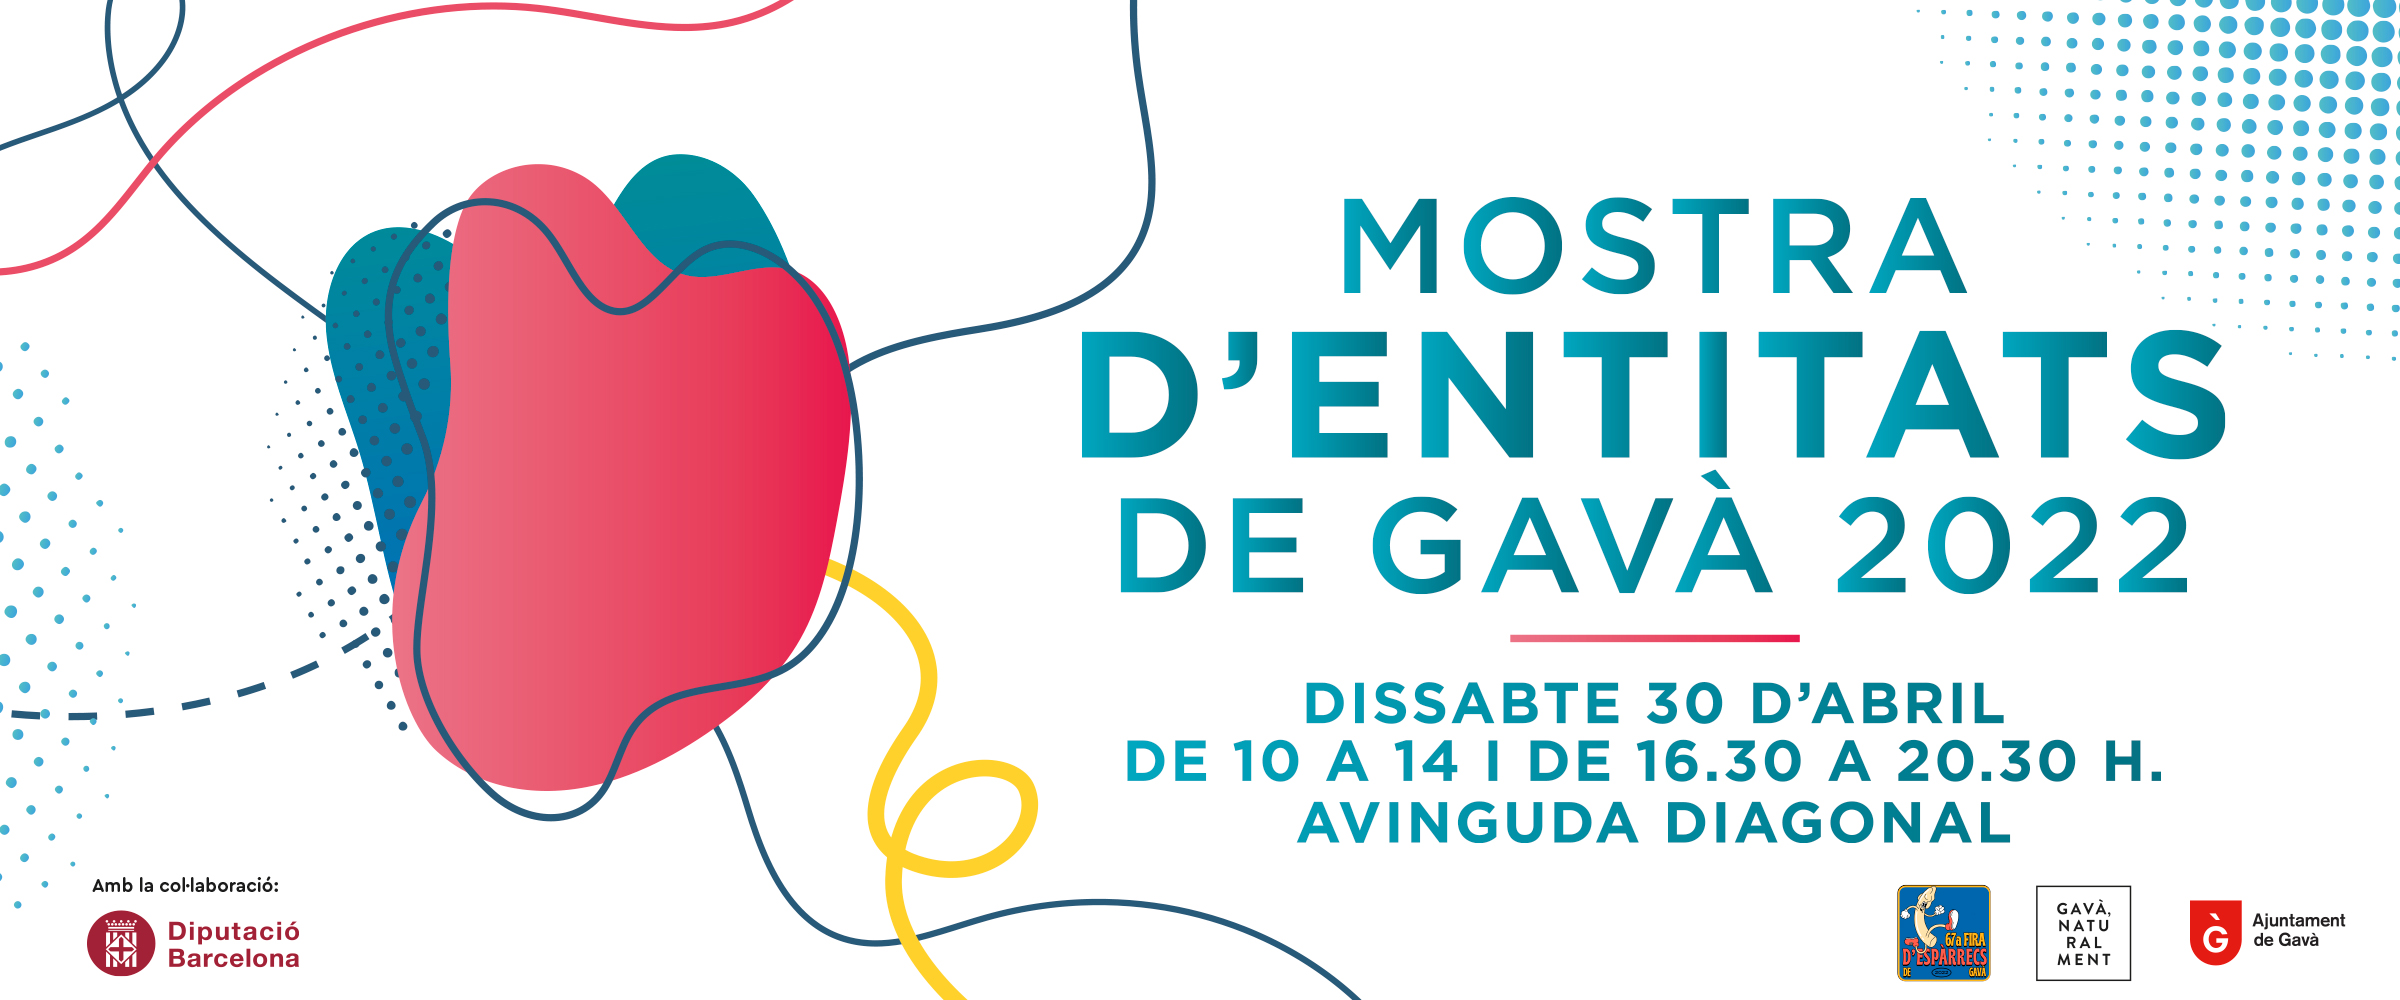 L’Associació Catalana De Fibrosi Quística A La Mostra D’Entitats De Gavà